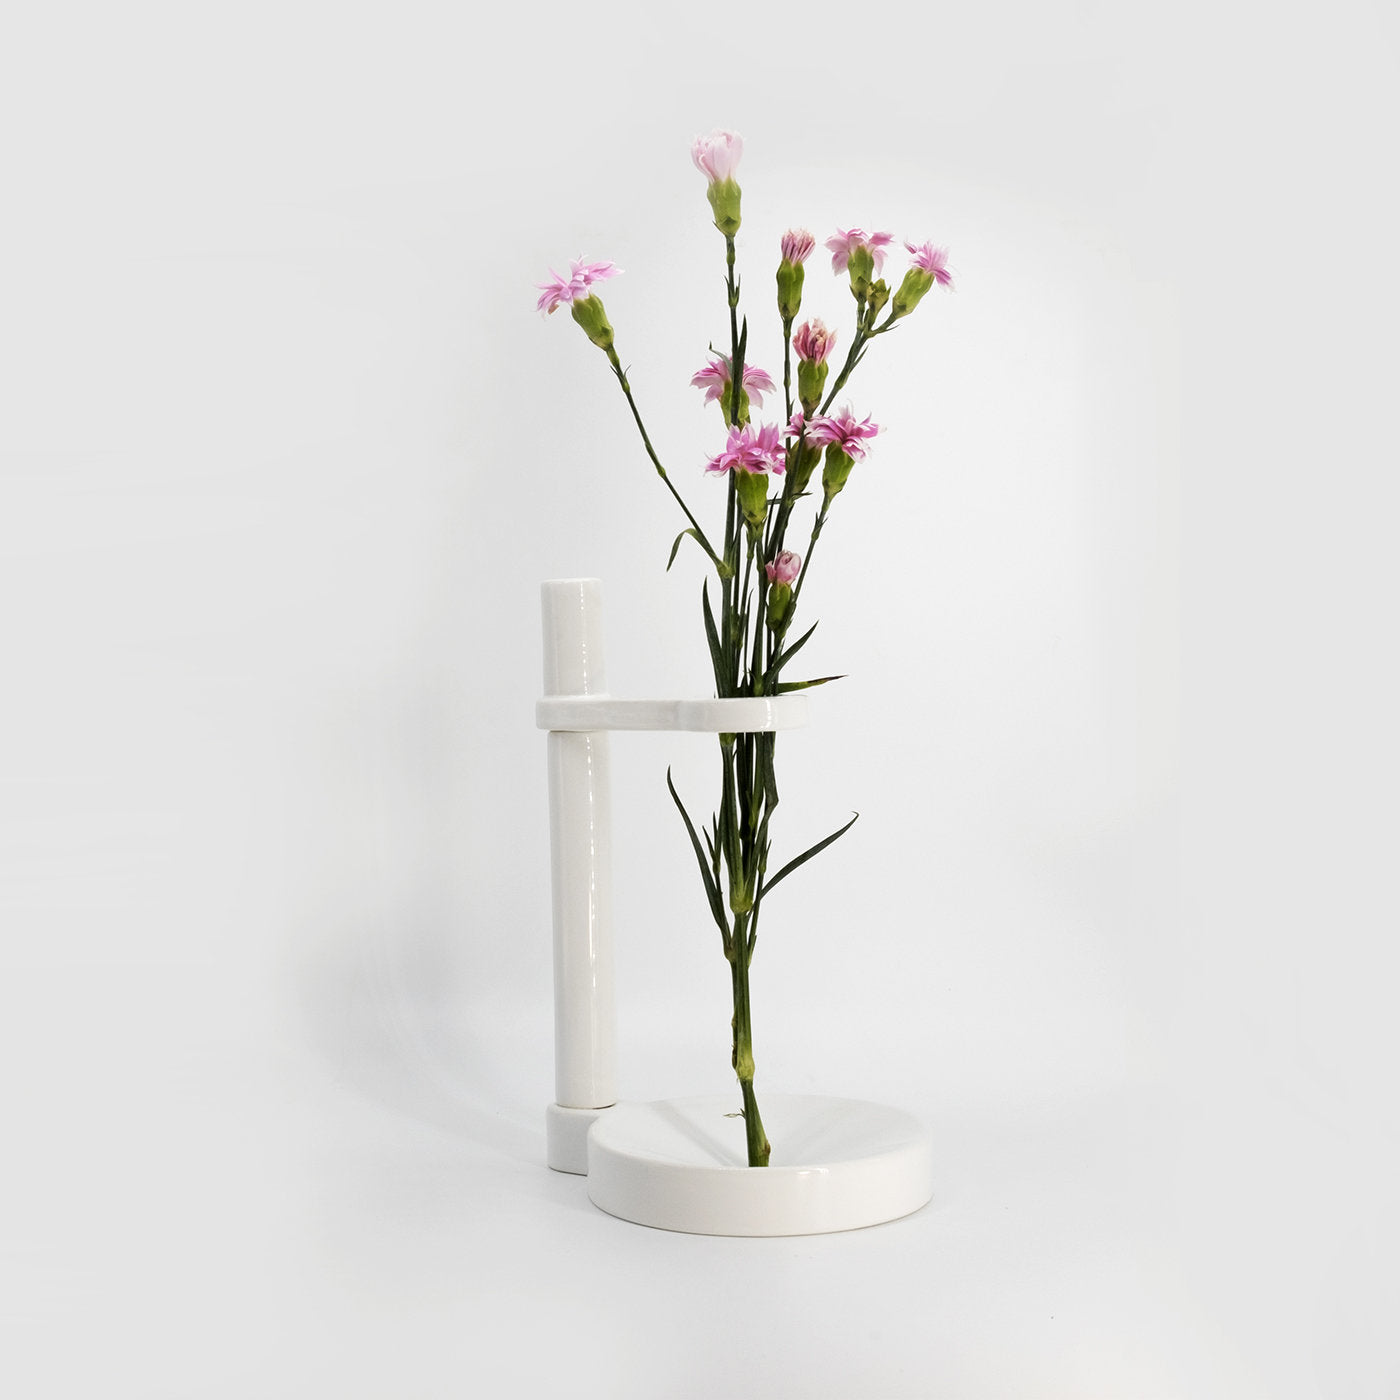 Minimo 1 White Vase - Alternative view 3